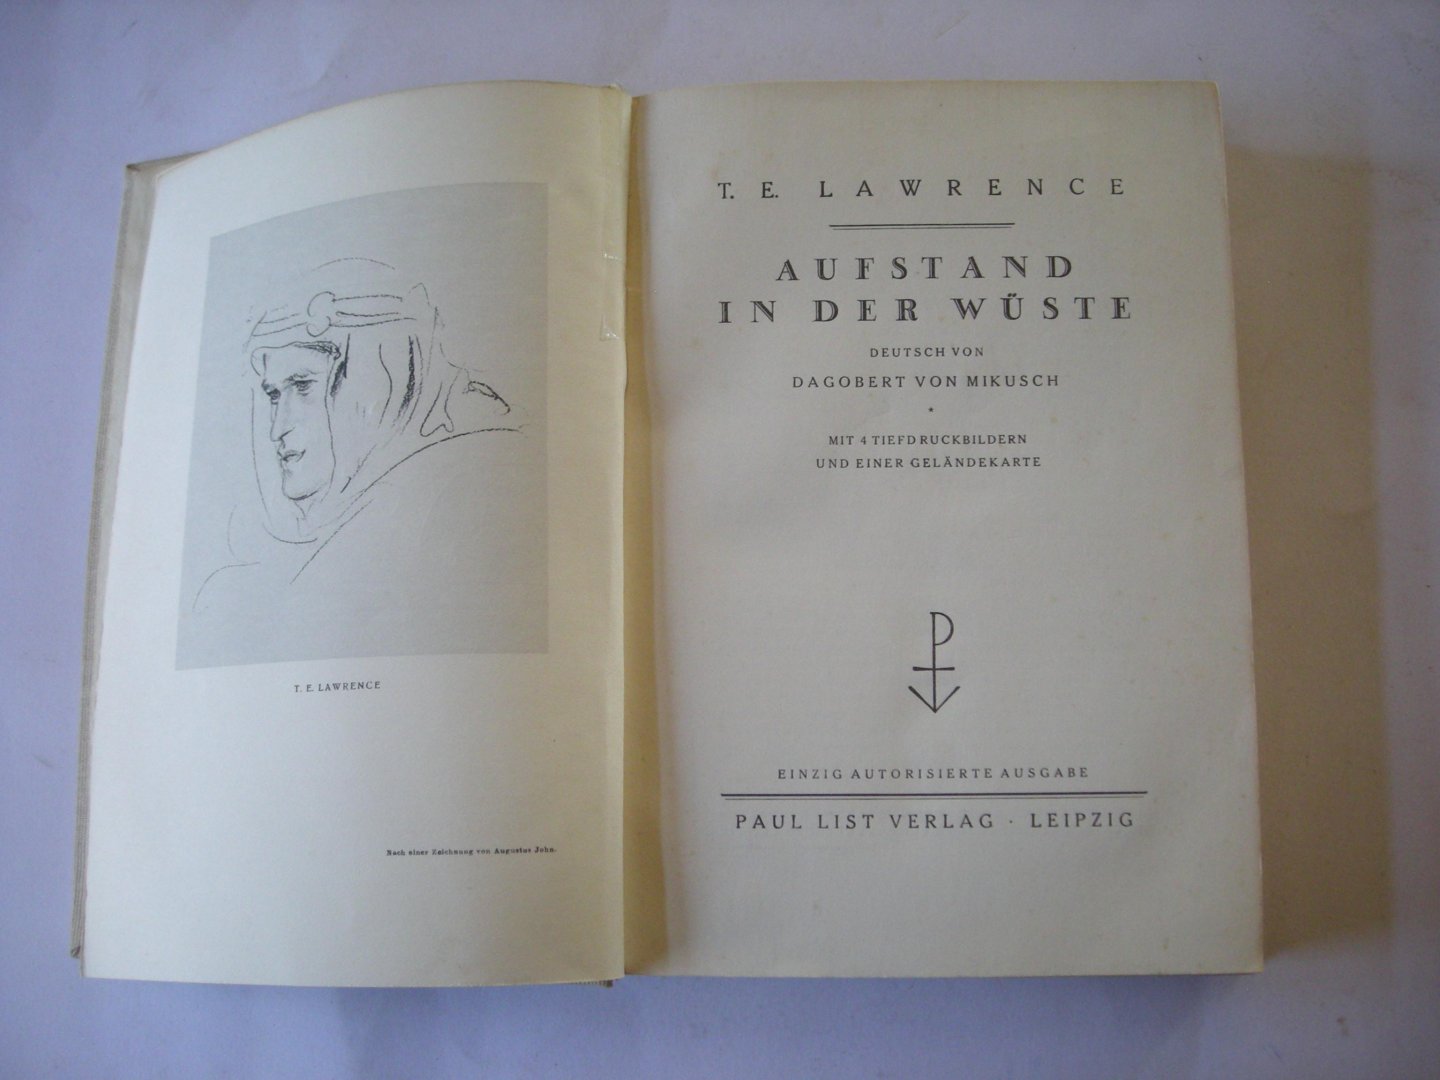 Lawrence, T.E. / Mikusch, Dagobert von, autorisierte Ausgabe - Aufstand in der Wuste mit 4 Tiefdruckbildern und einer Gelandekarte